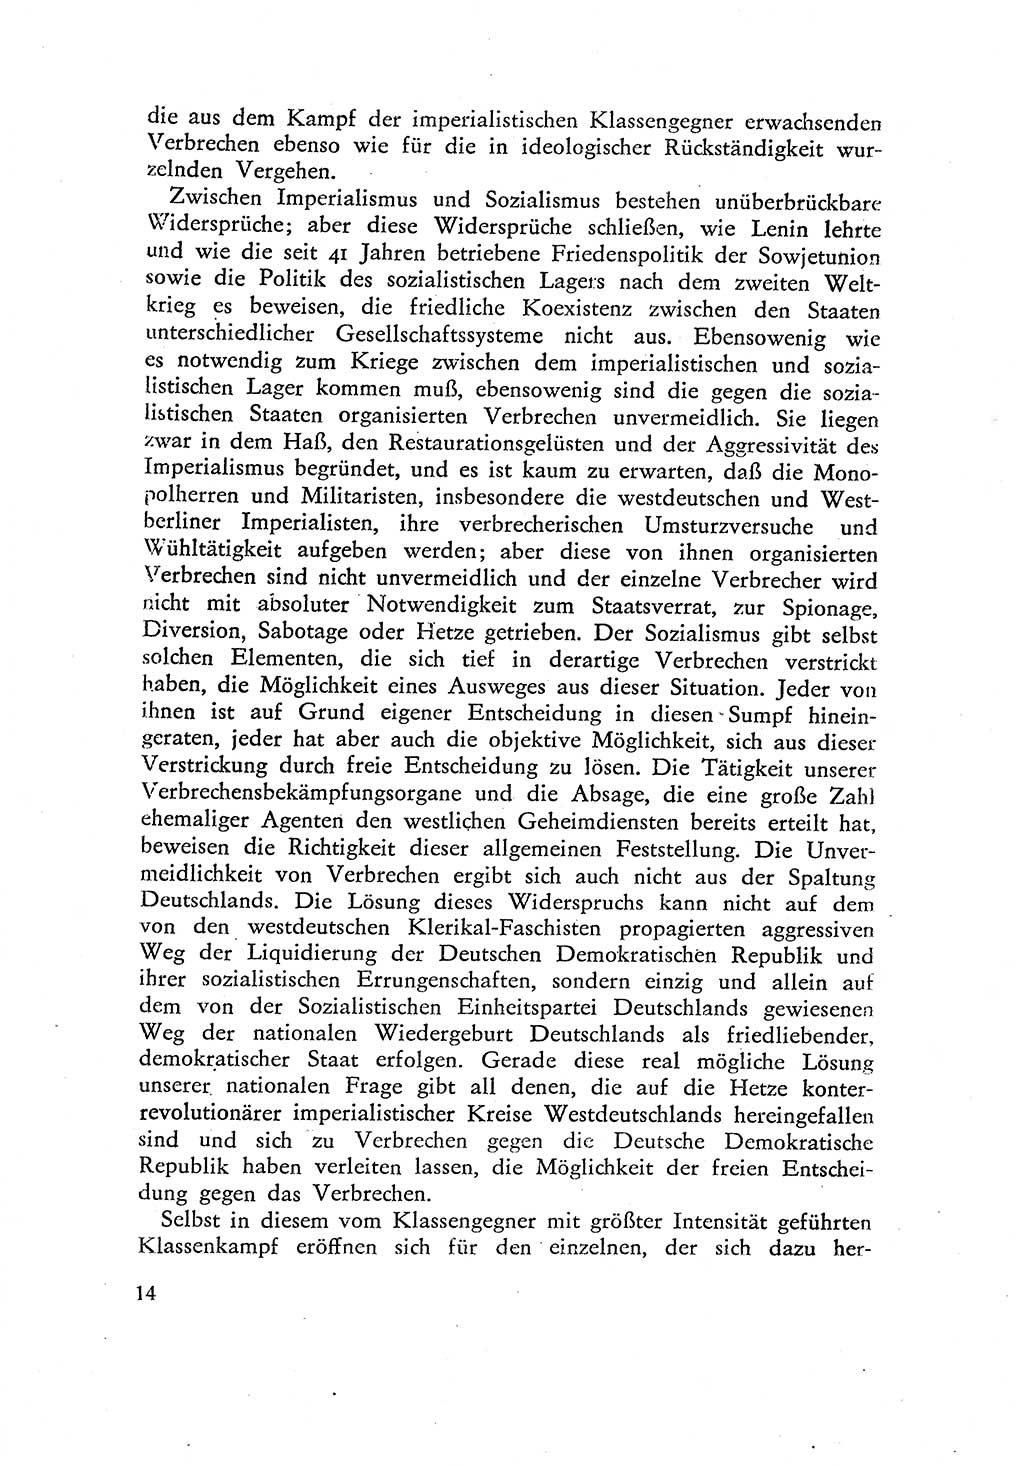 Beiträge zum Strafrecht [Deutsche Demokratische Republik (DDR)] 1959, Seite 14 (Beitr. Strafr. DDR 1959, S. 14)